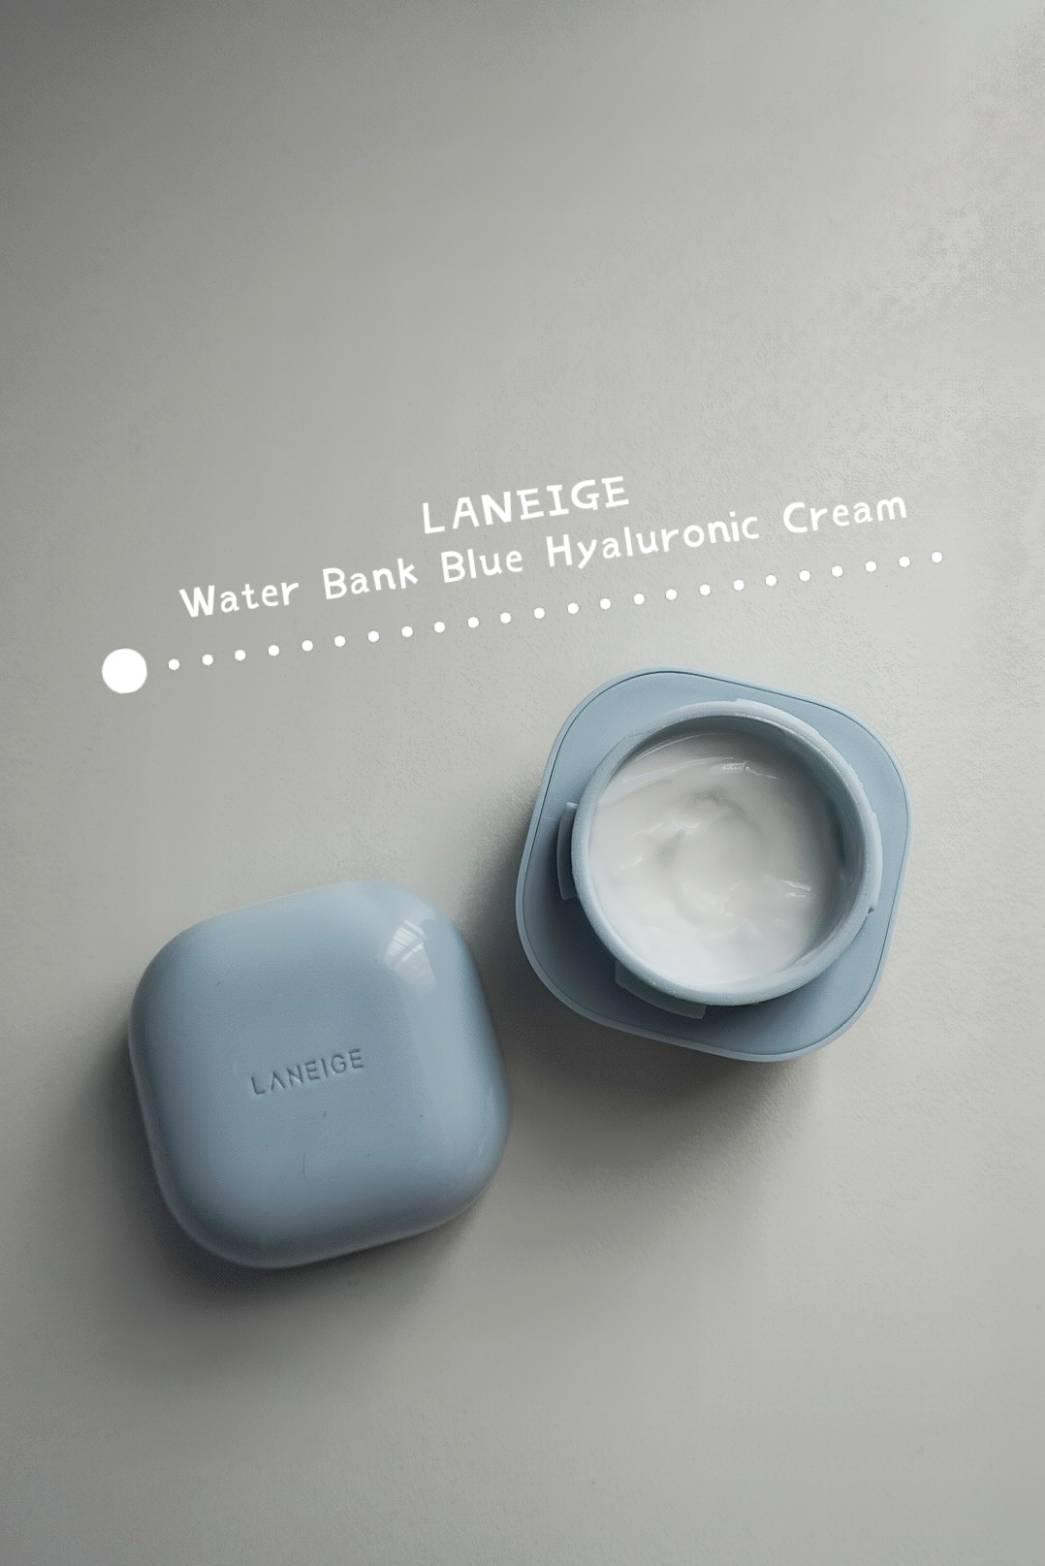 ภาพหน้าปก มาเติมน้ำให้ผิวสวยฉ่ำจากภายในด้วย LANEIGE Water Bank Blue Hyaluronic Cream ด้วยกันนะคะ🥰 ที่:0